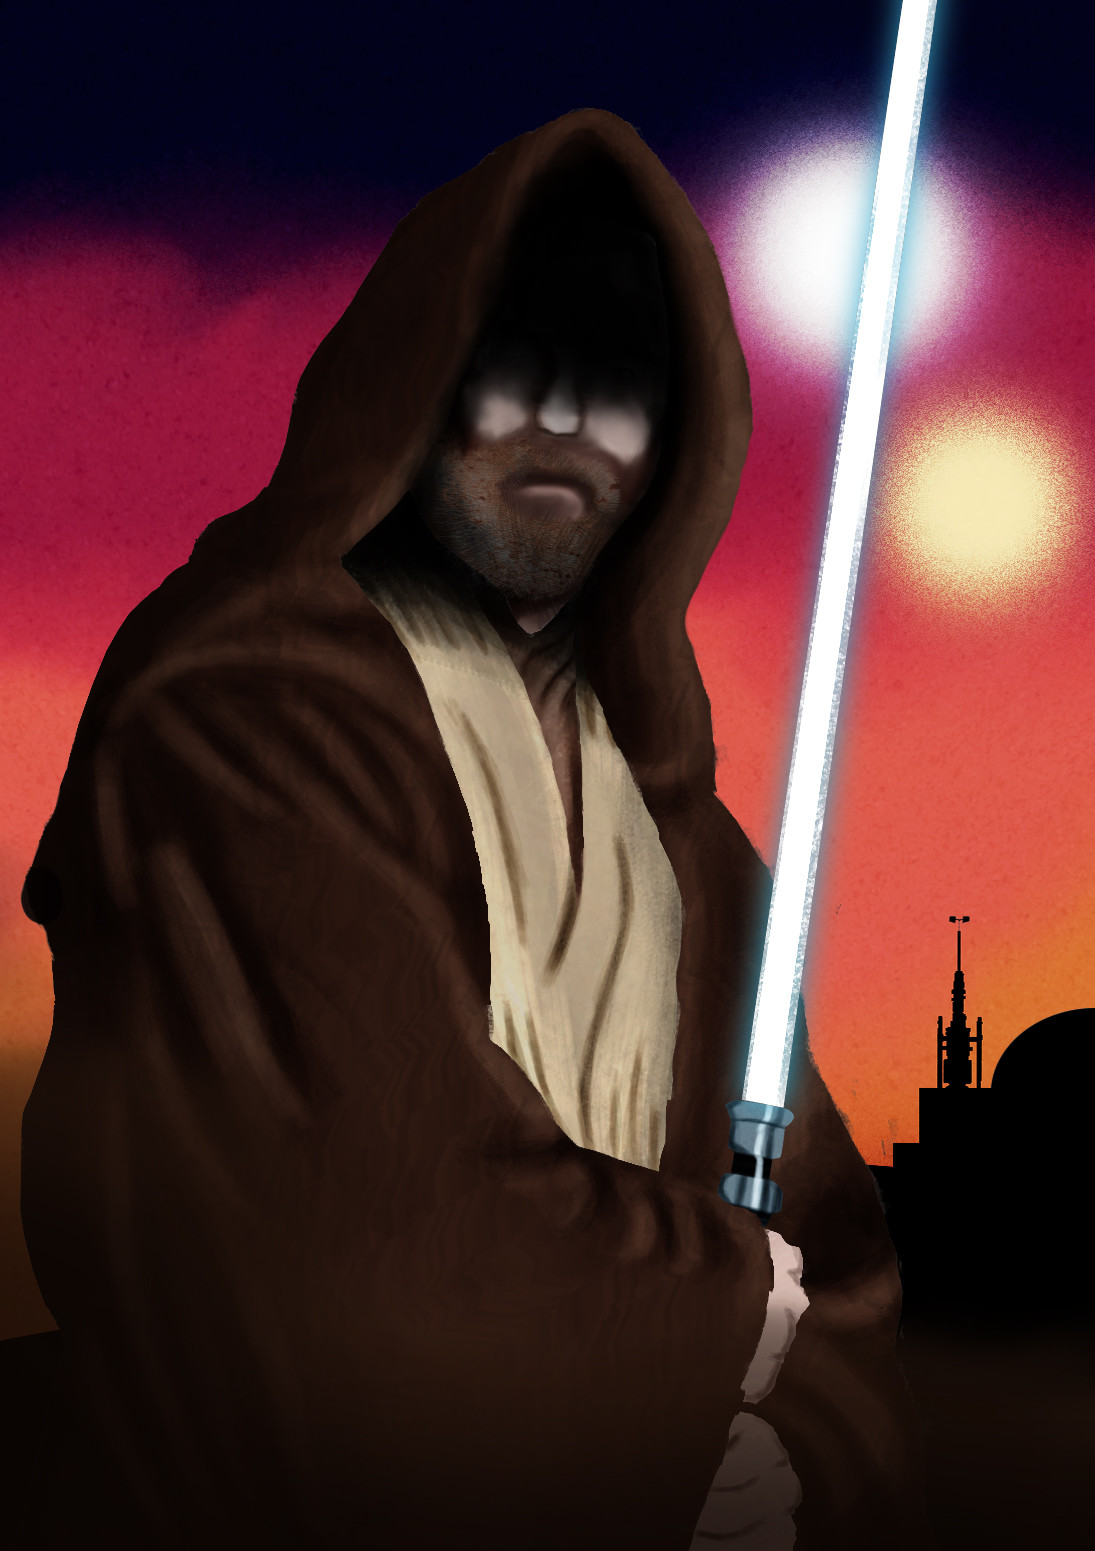 ArtStation - Jedi Master Obi-Wan Kenobi, Zarej Pastor